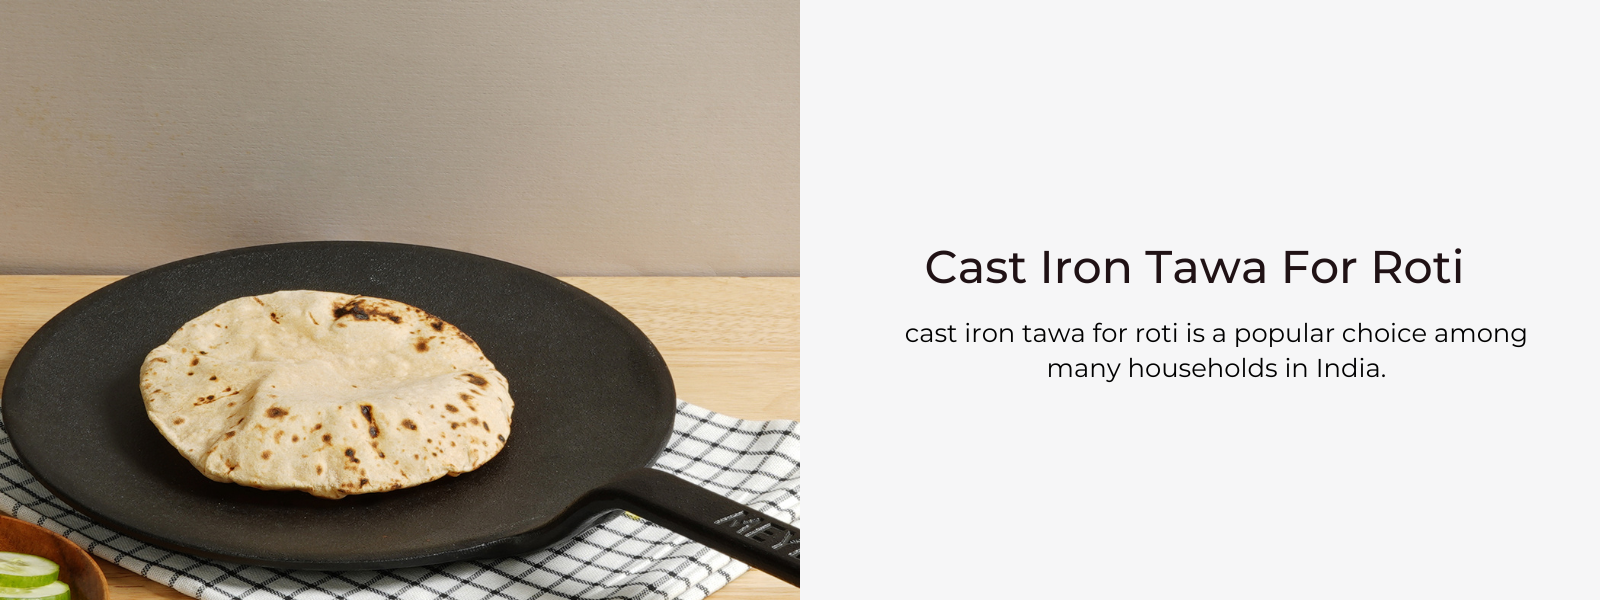 Best Cast Iron Tawa, Roti tawa, Different types of tawa